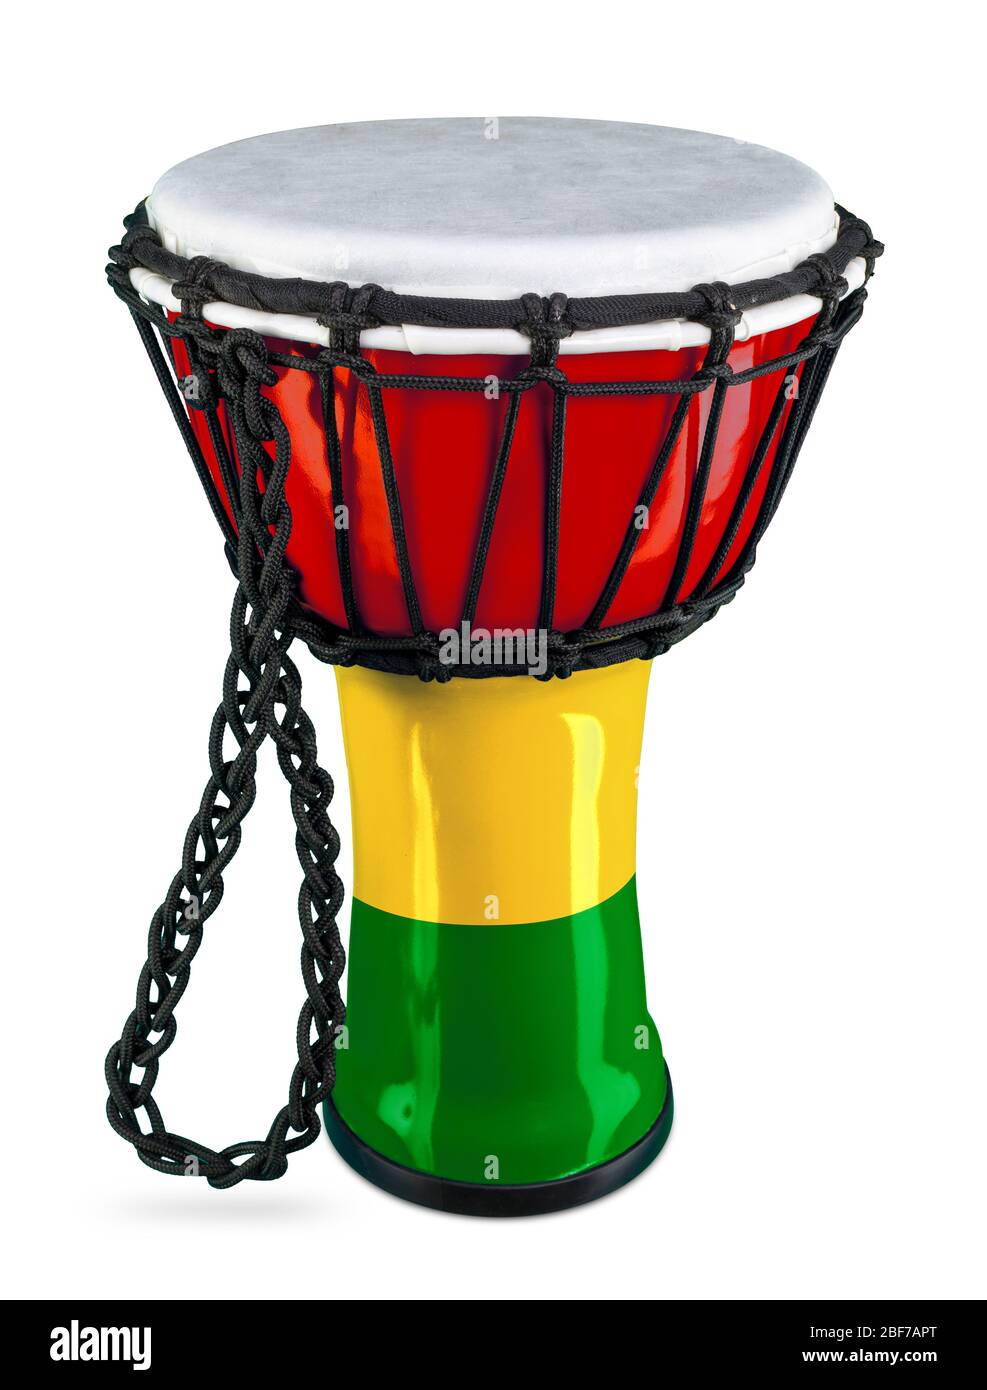 Traditionelle Djembe Handtrommel afrikanische Kultur Percussion Instrument in bunten rot gelb grün ghana Flagge Farben isoliert auf weißem Hintergrund. Traditionell Stockfoto